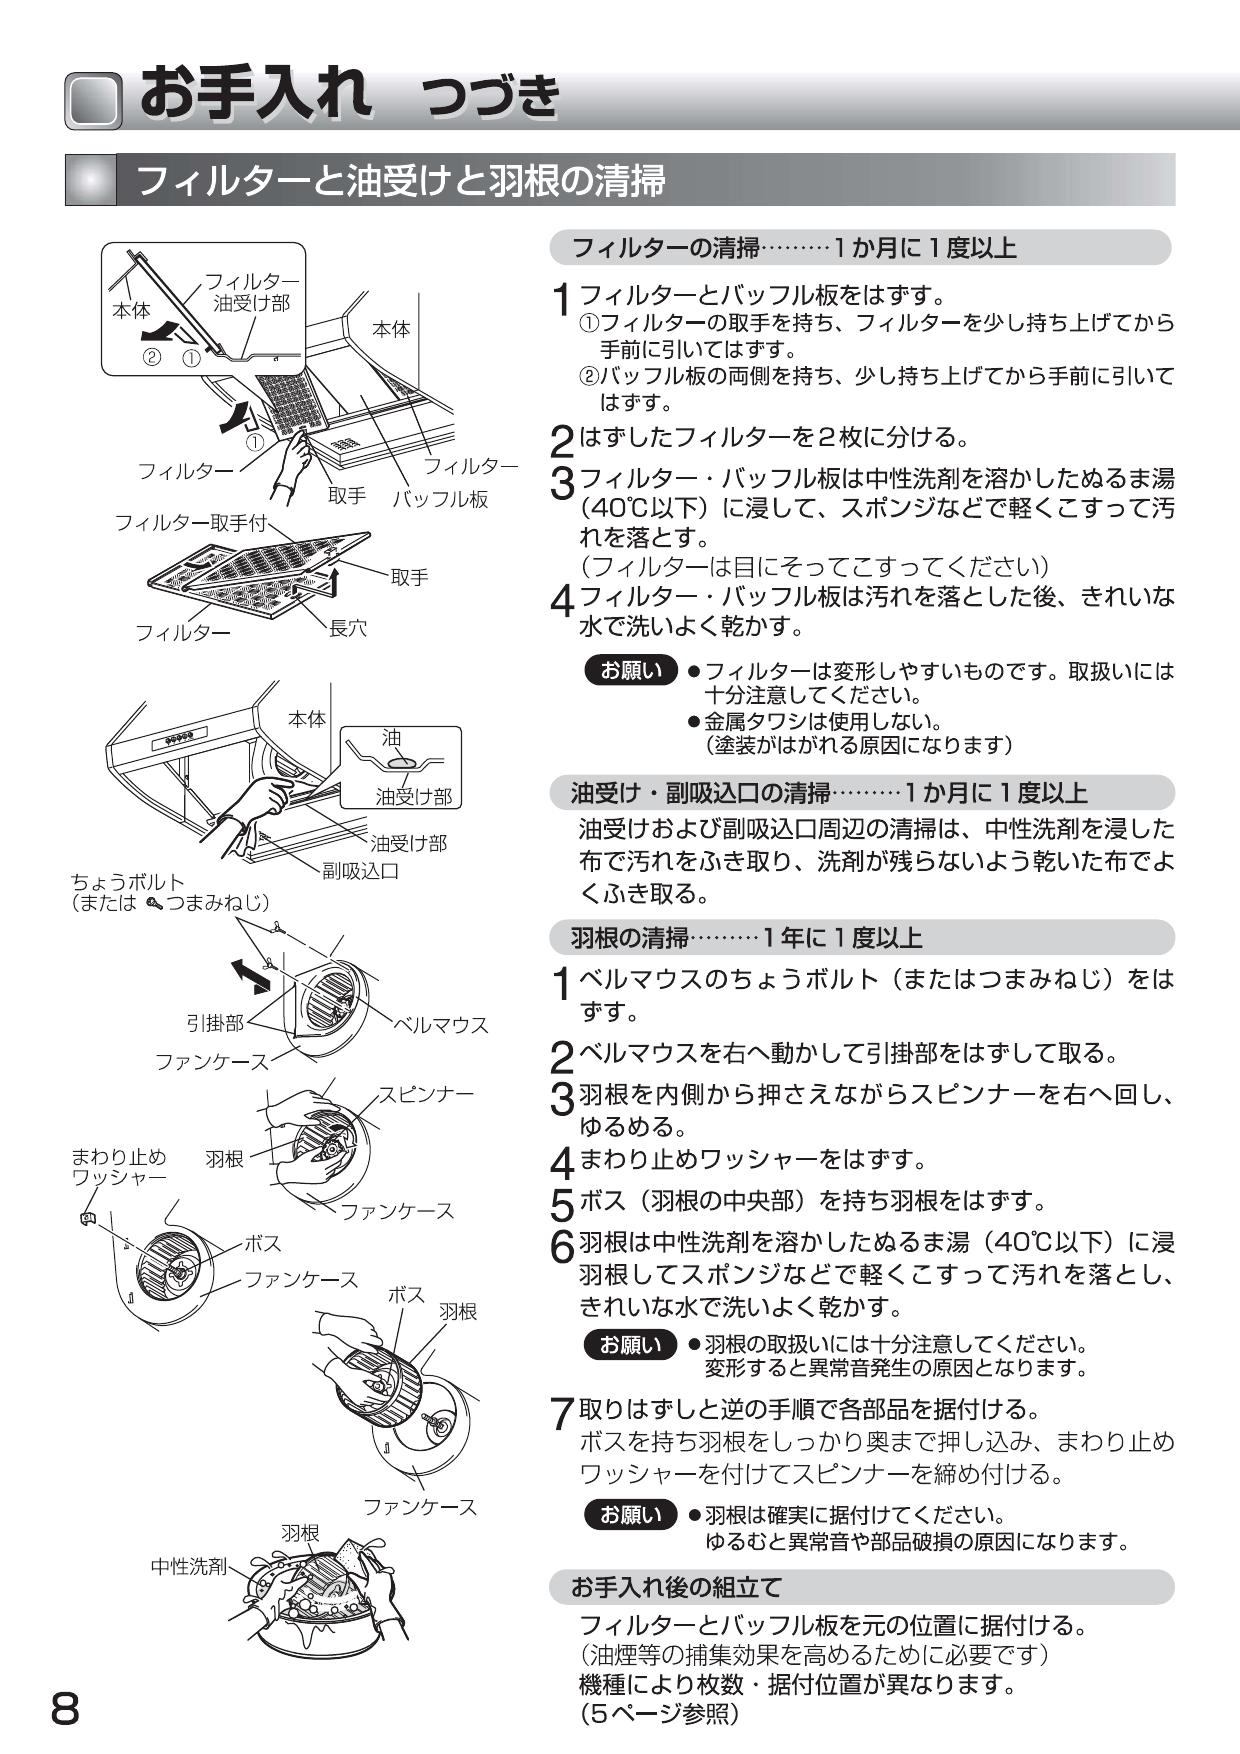 三菱電機 (MITSUBISHI) レンジフードファン ブース形 (深形)・BL認定品 V-604KL7-BL - 3